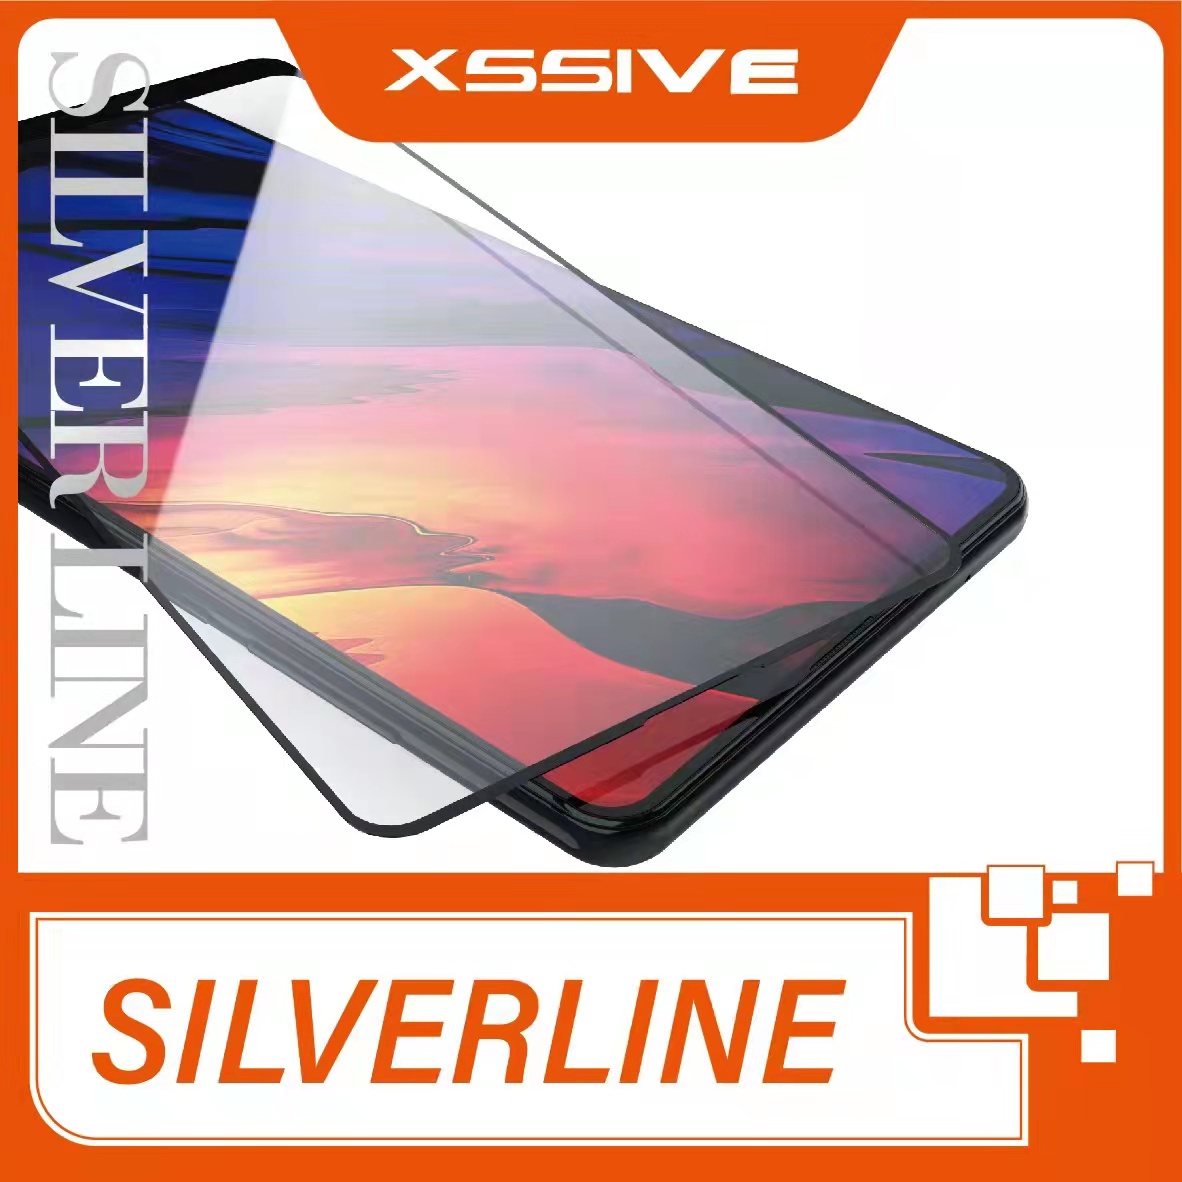 NL - Artikelgroep - Smartphone - Silverline